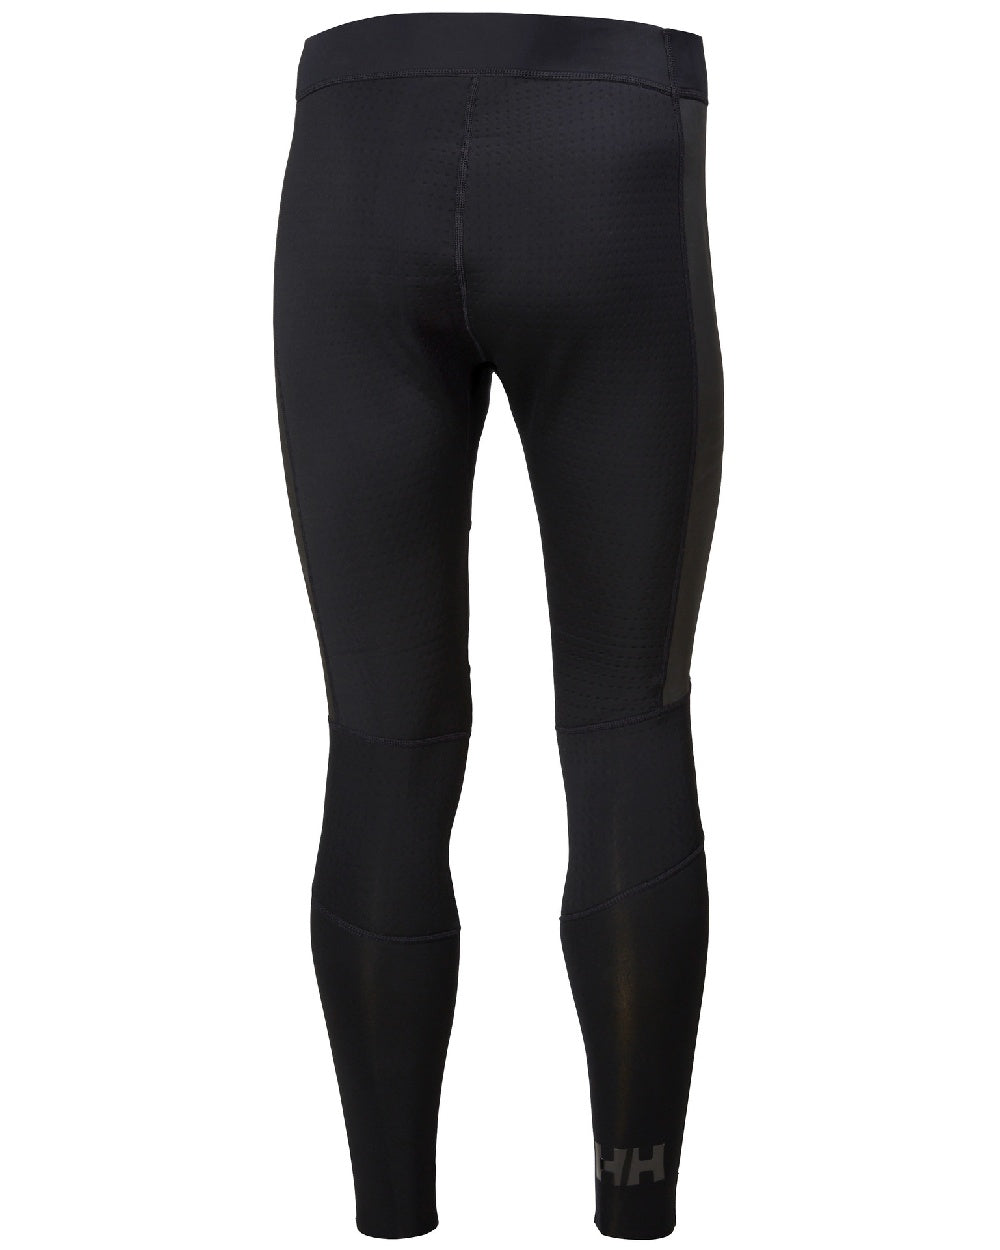 Black coloured Helly Hansen Unisex Waterwear Pants on white background 